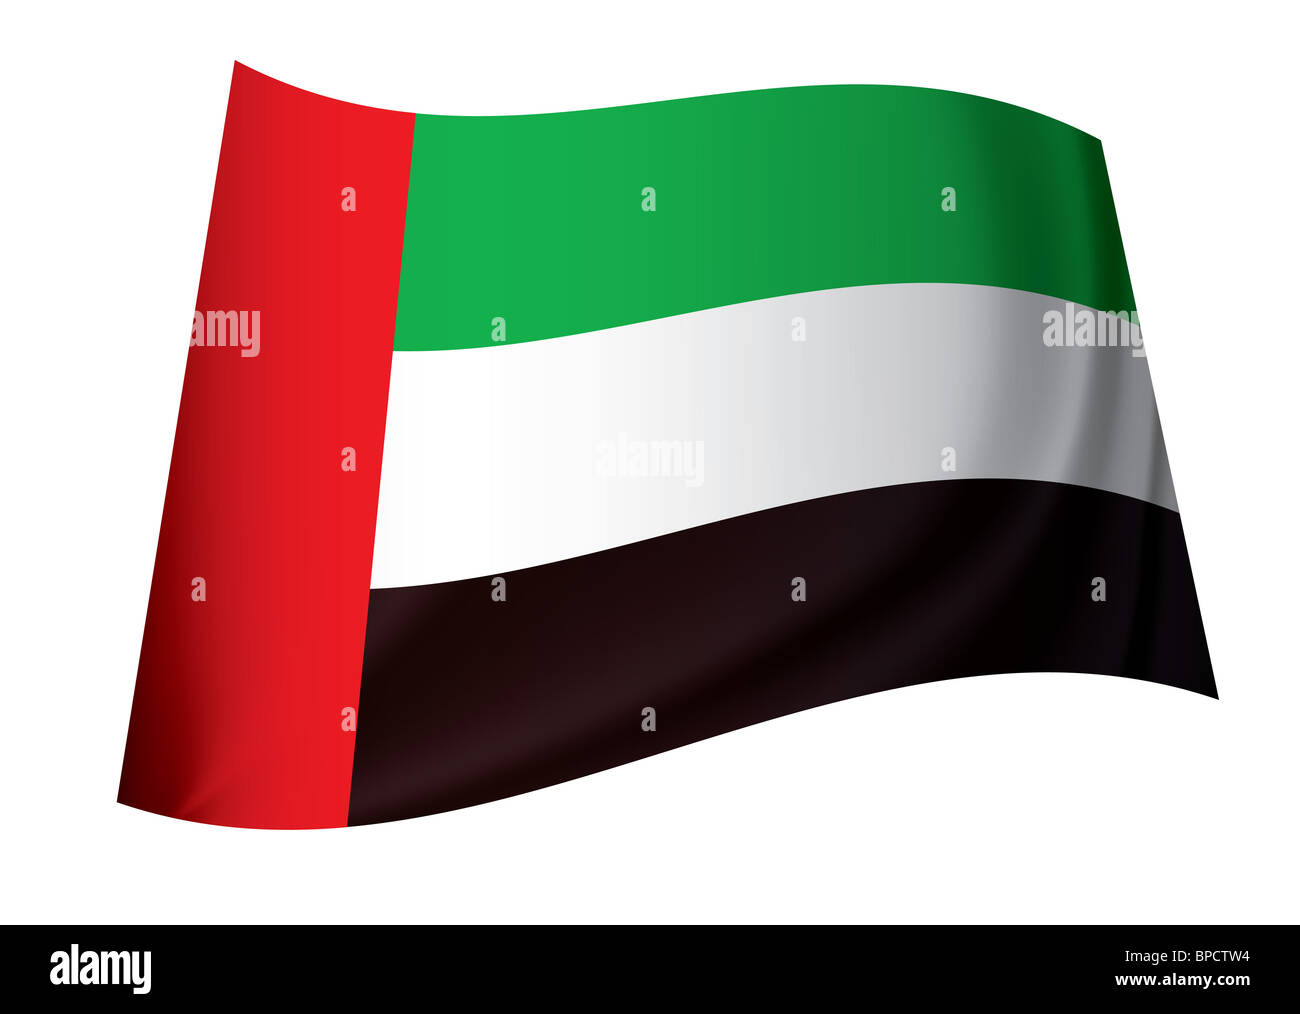 Vereinigte Arabische Emirate-Fahne in grün rot, weiß und schwarz  Stockfotografie - Alamy